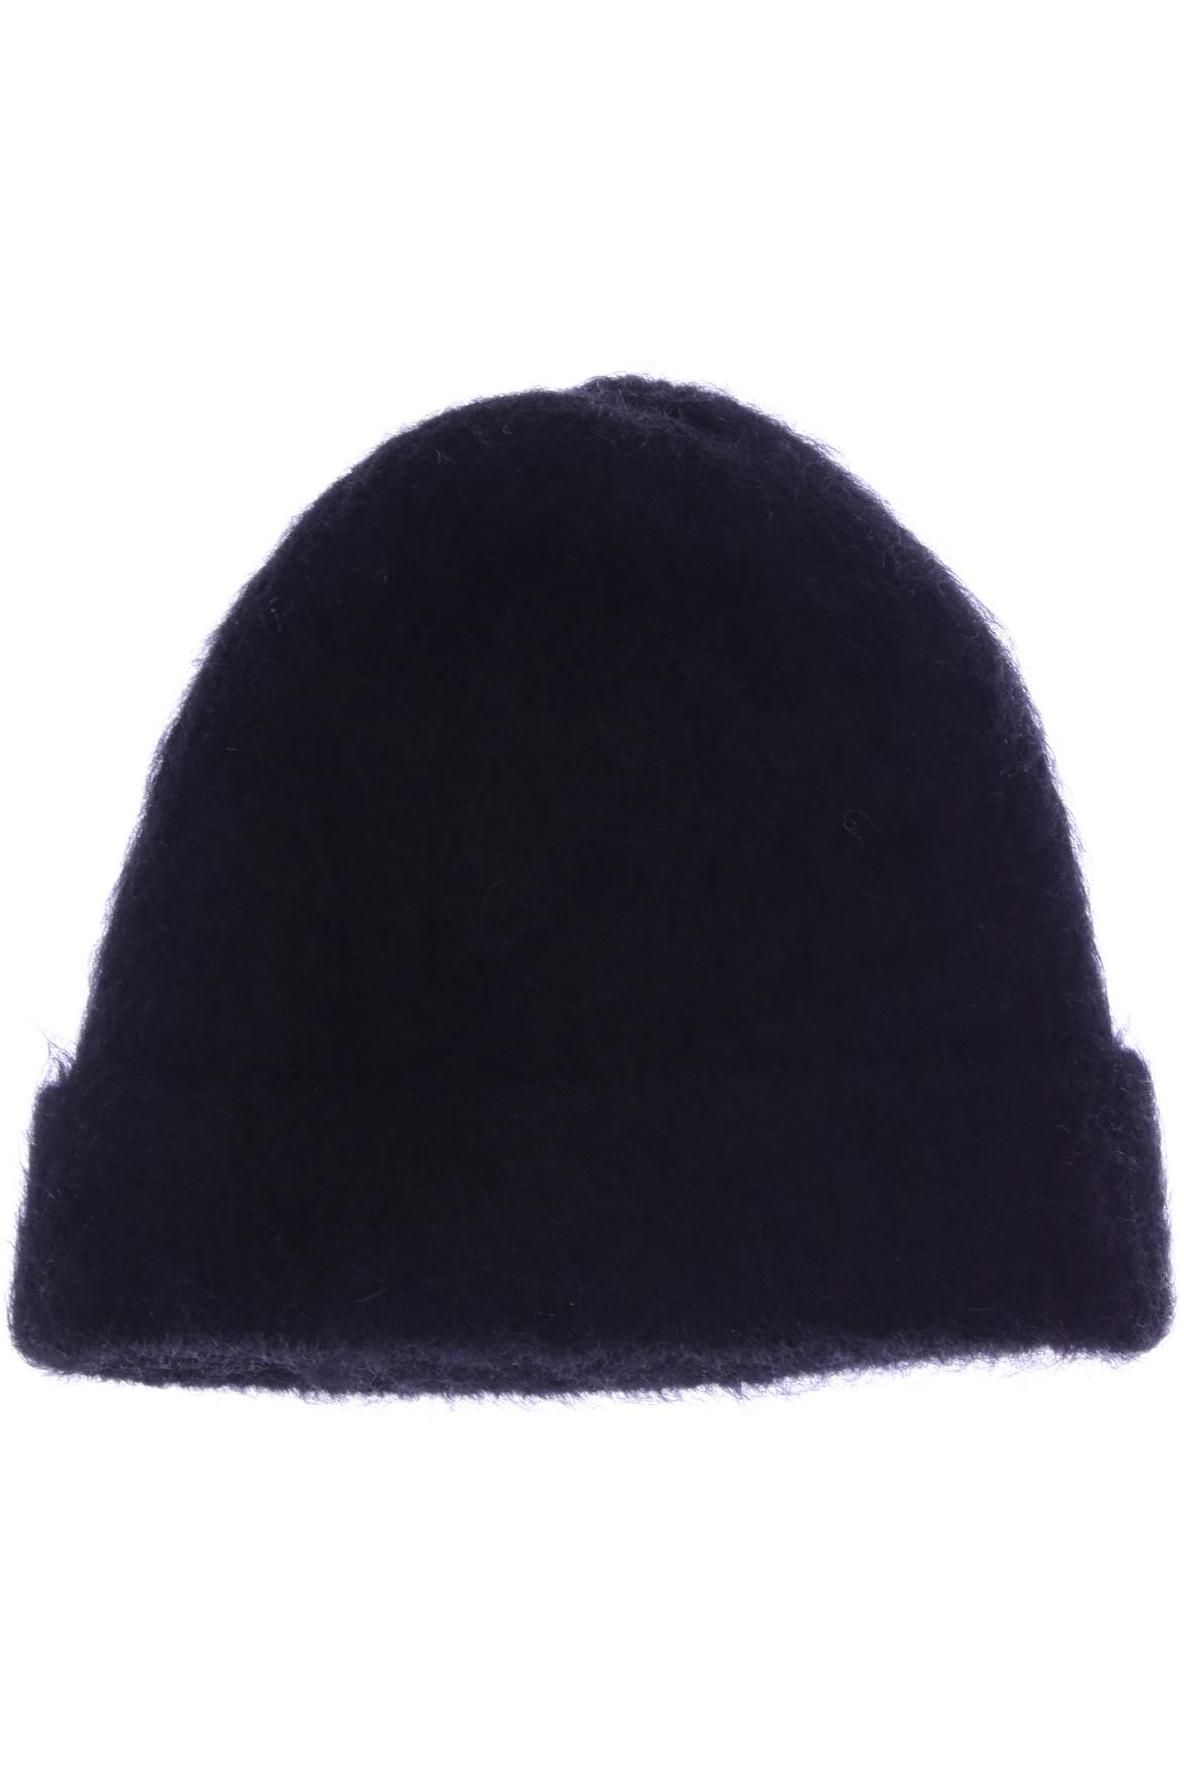 COS Damen Hut/Mütze, schwarz von COS